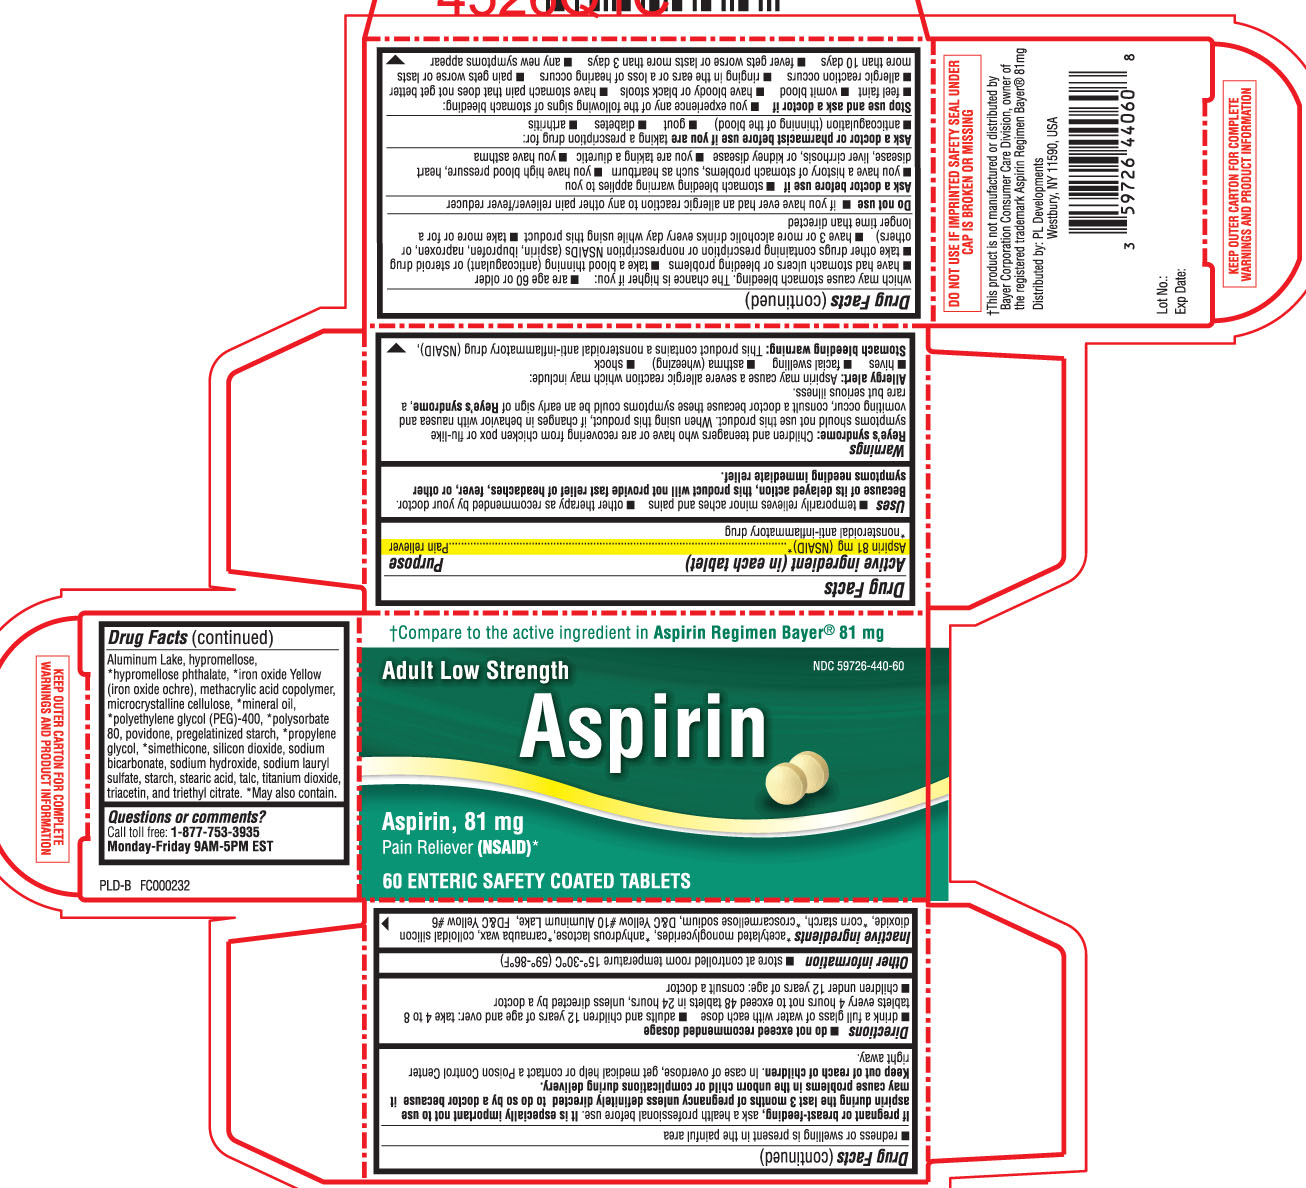 PLD Aspirin 81 mg